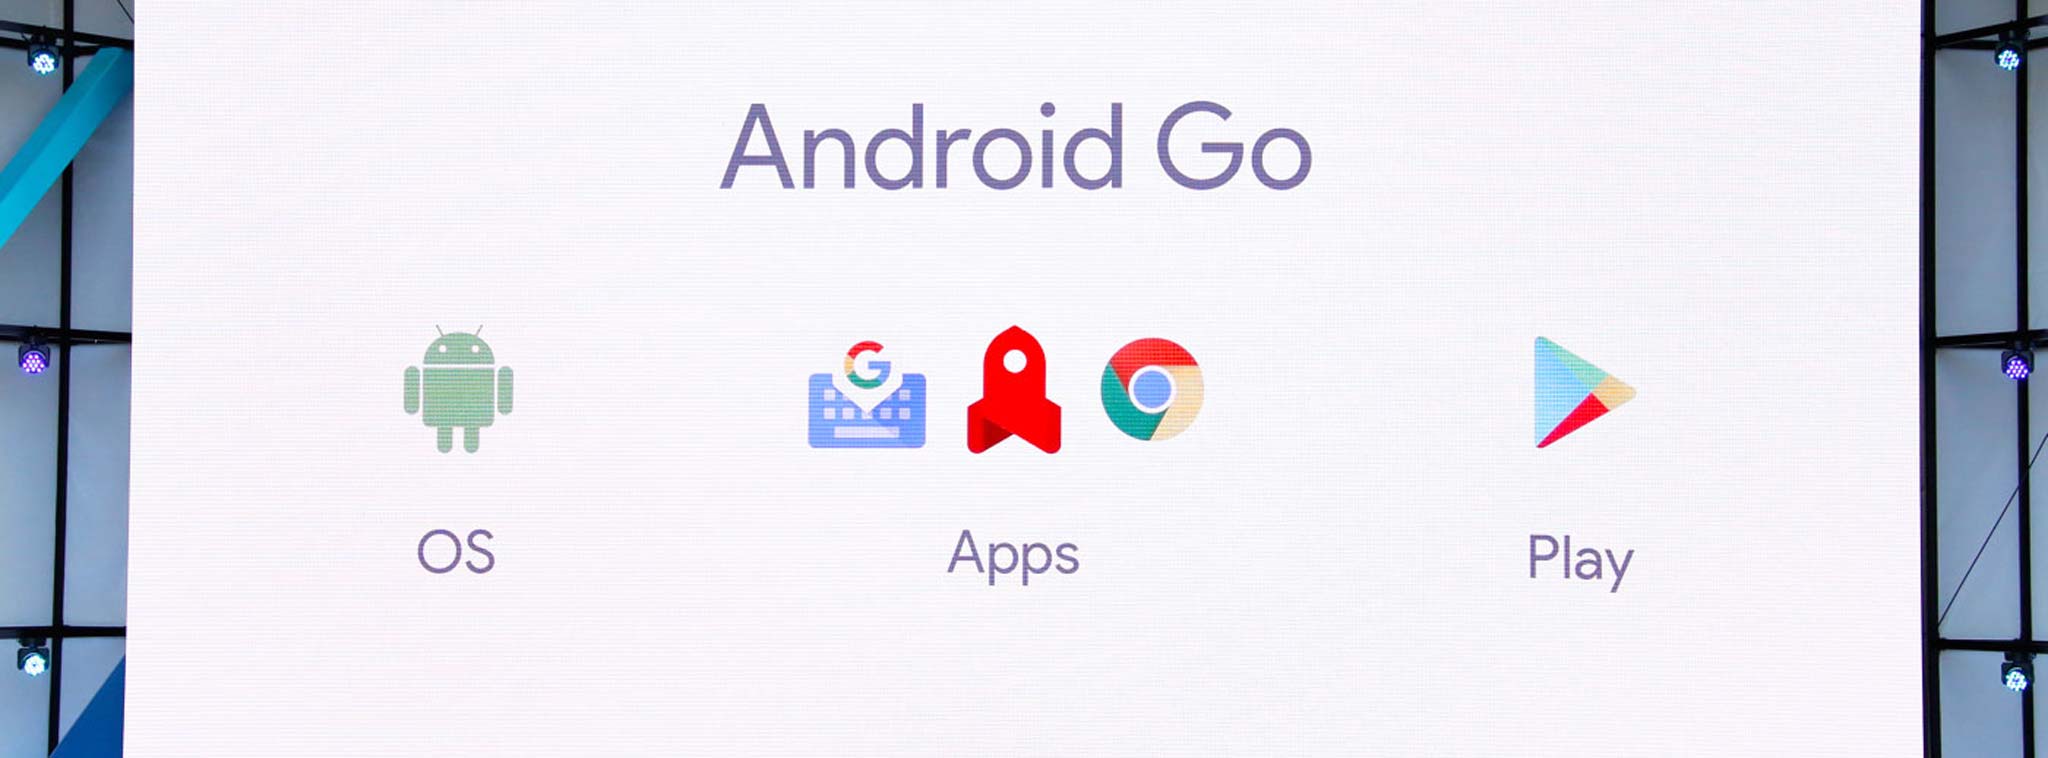 [Google I/O 2017] Android Go: phiên bản Android siêu nhẹ, chạy mượt trên các máy RAM chỉ 512MB